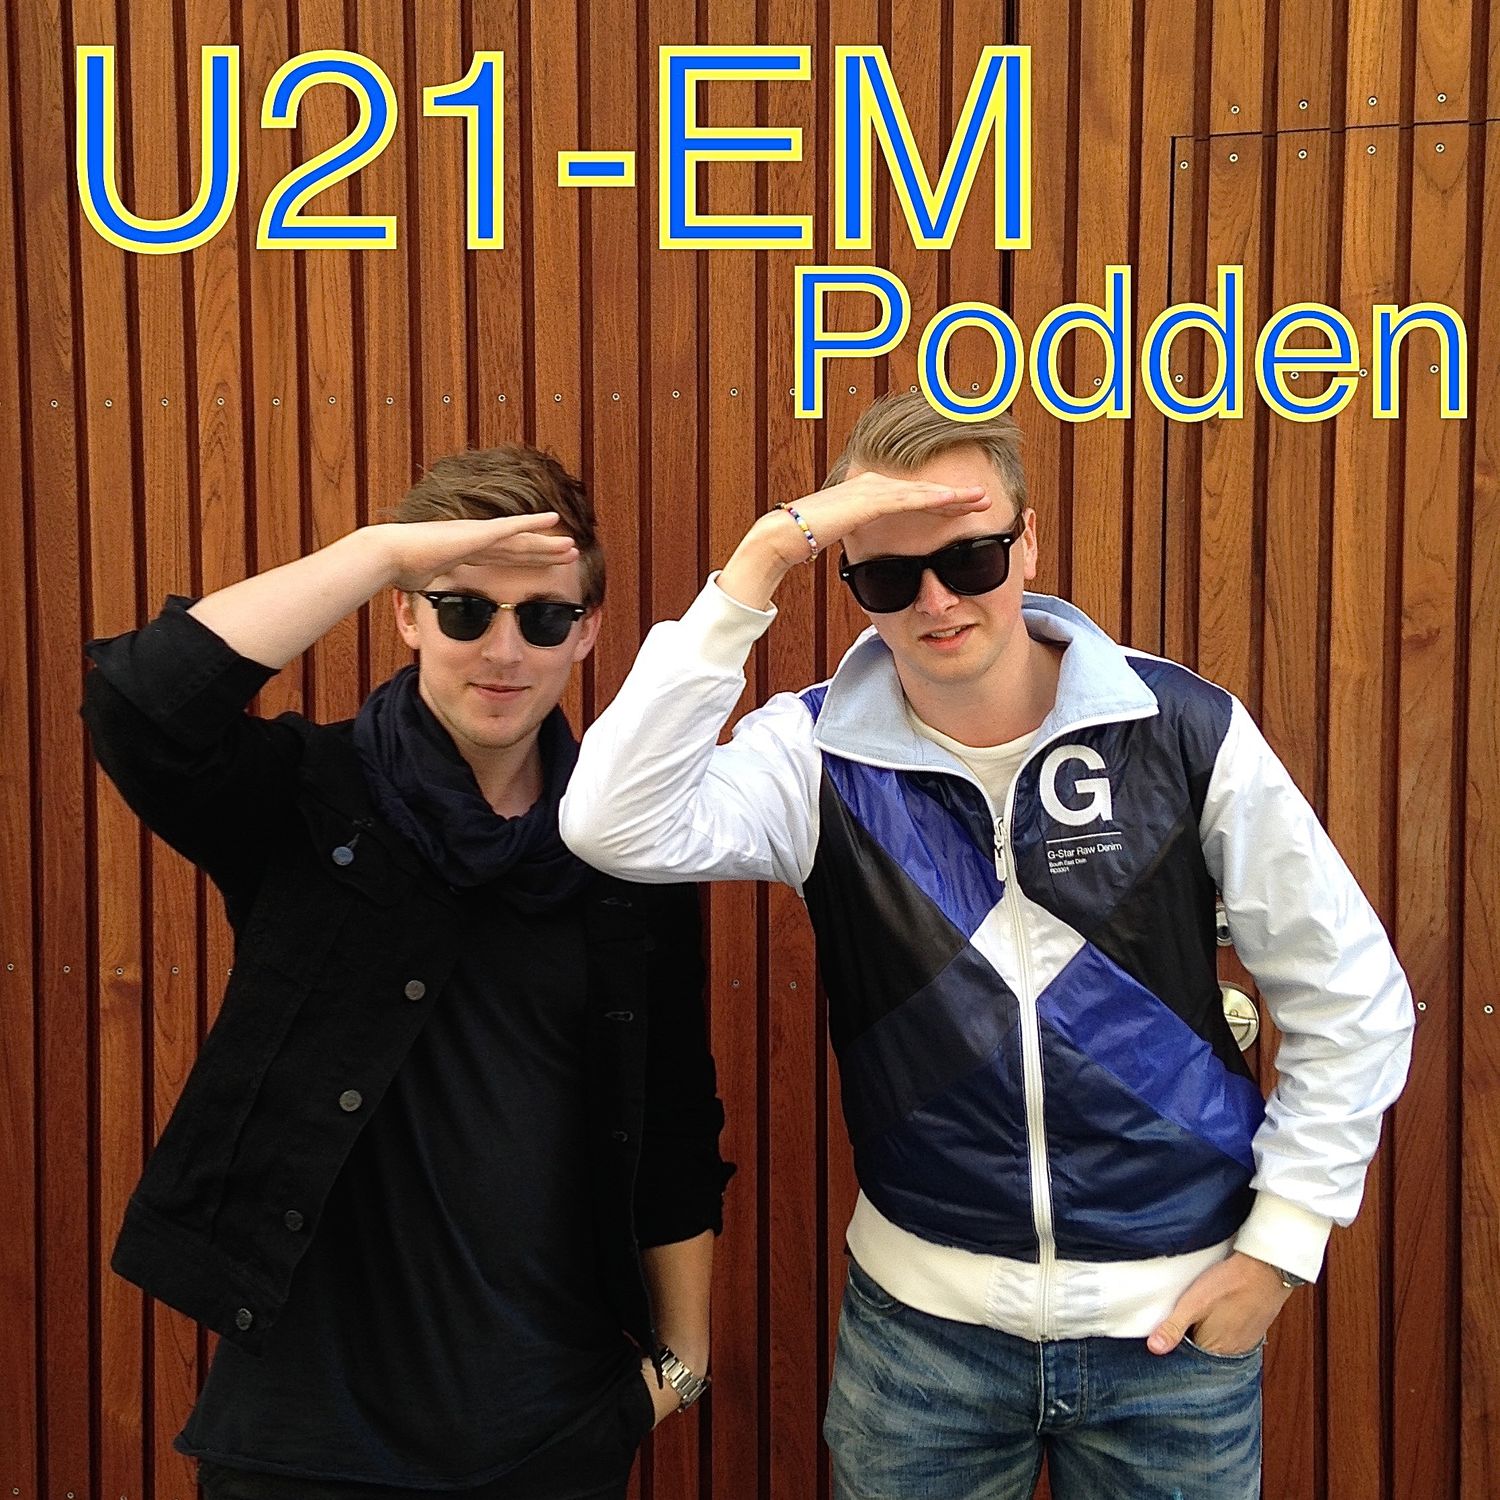 U21 EM-podden